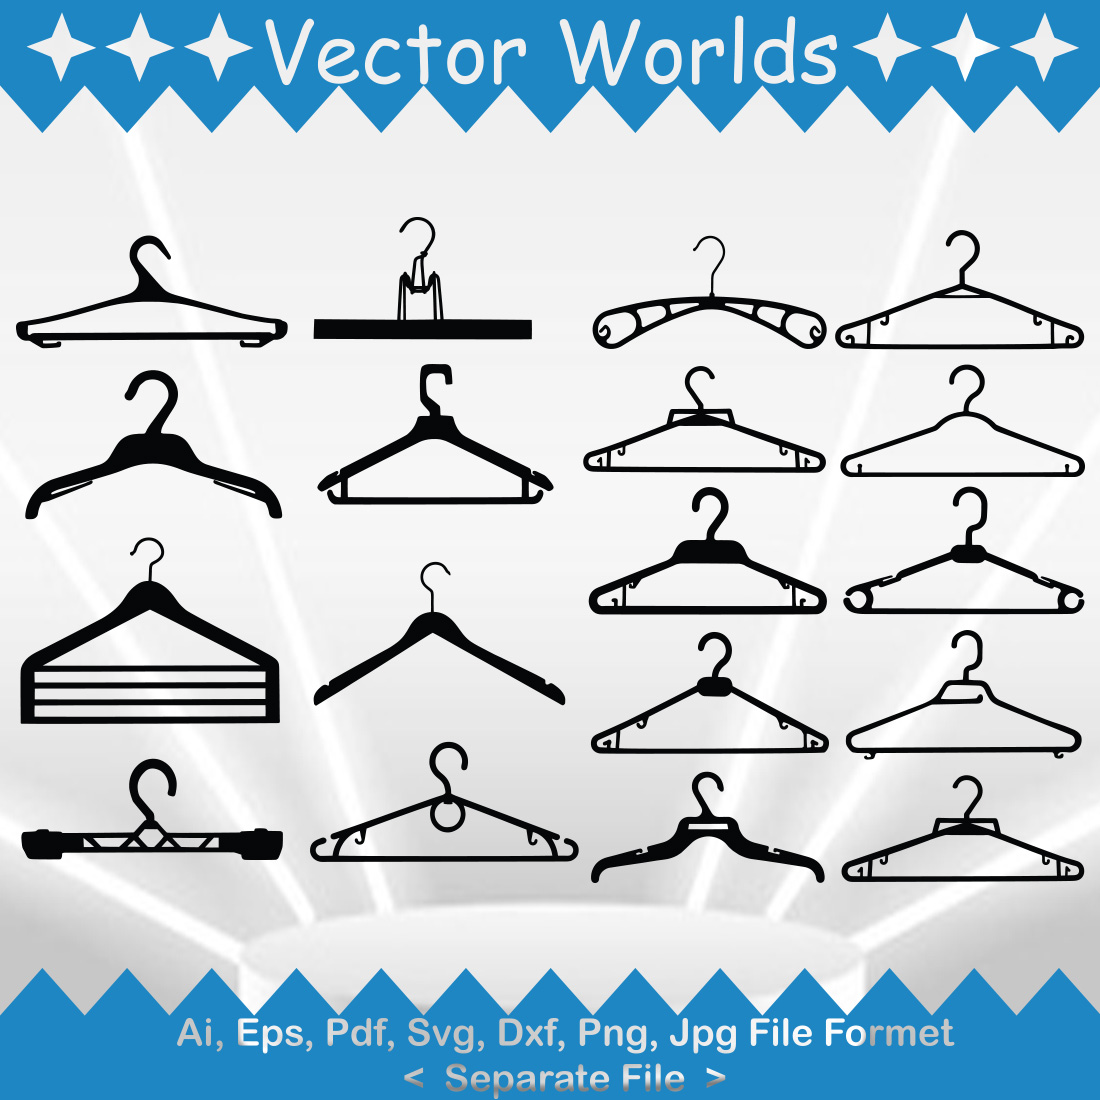 Hanger SVG Vector Design cover image.